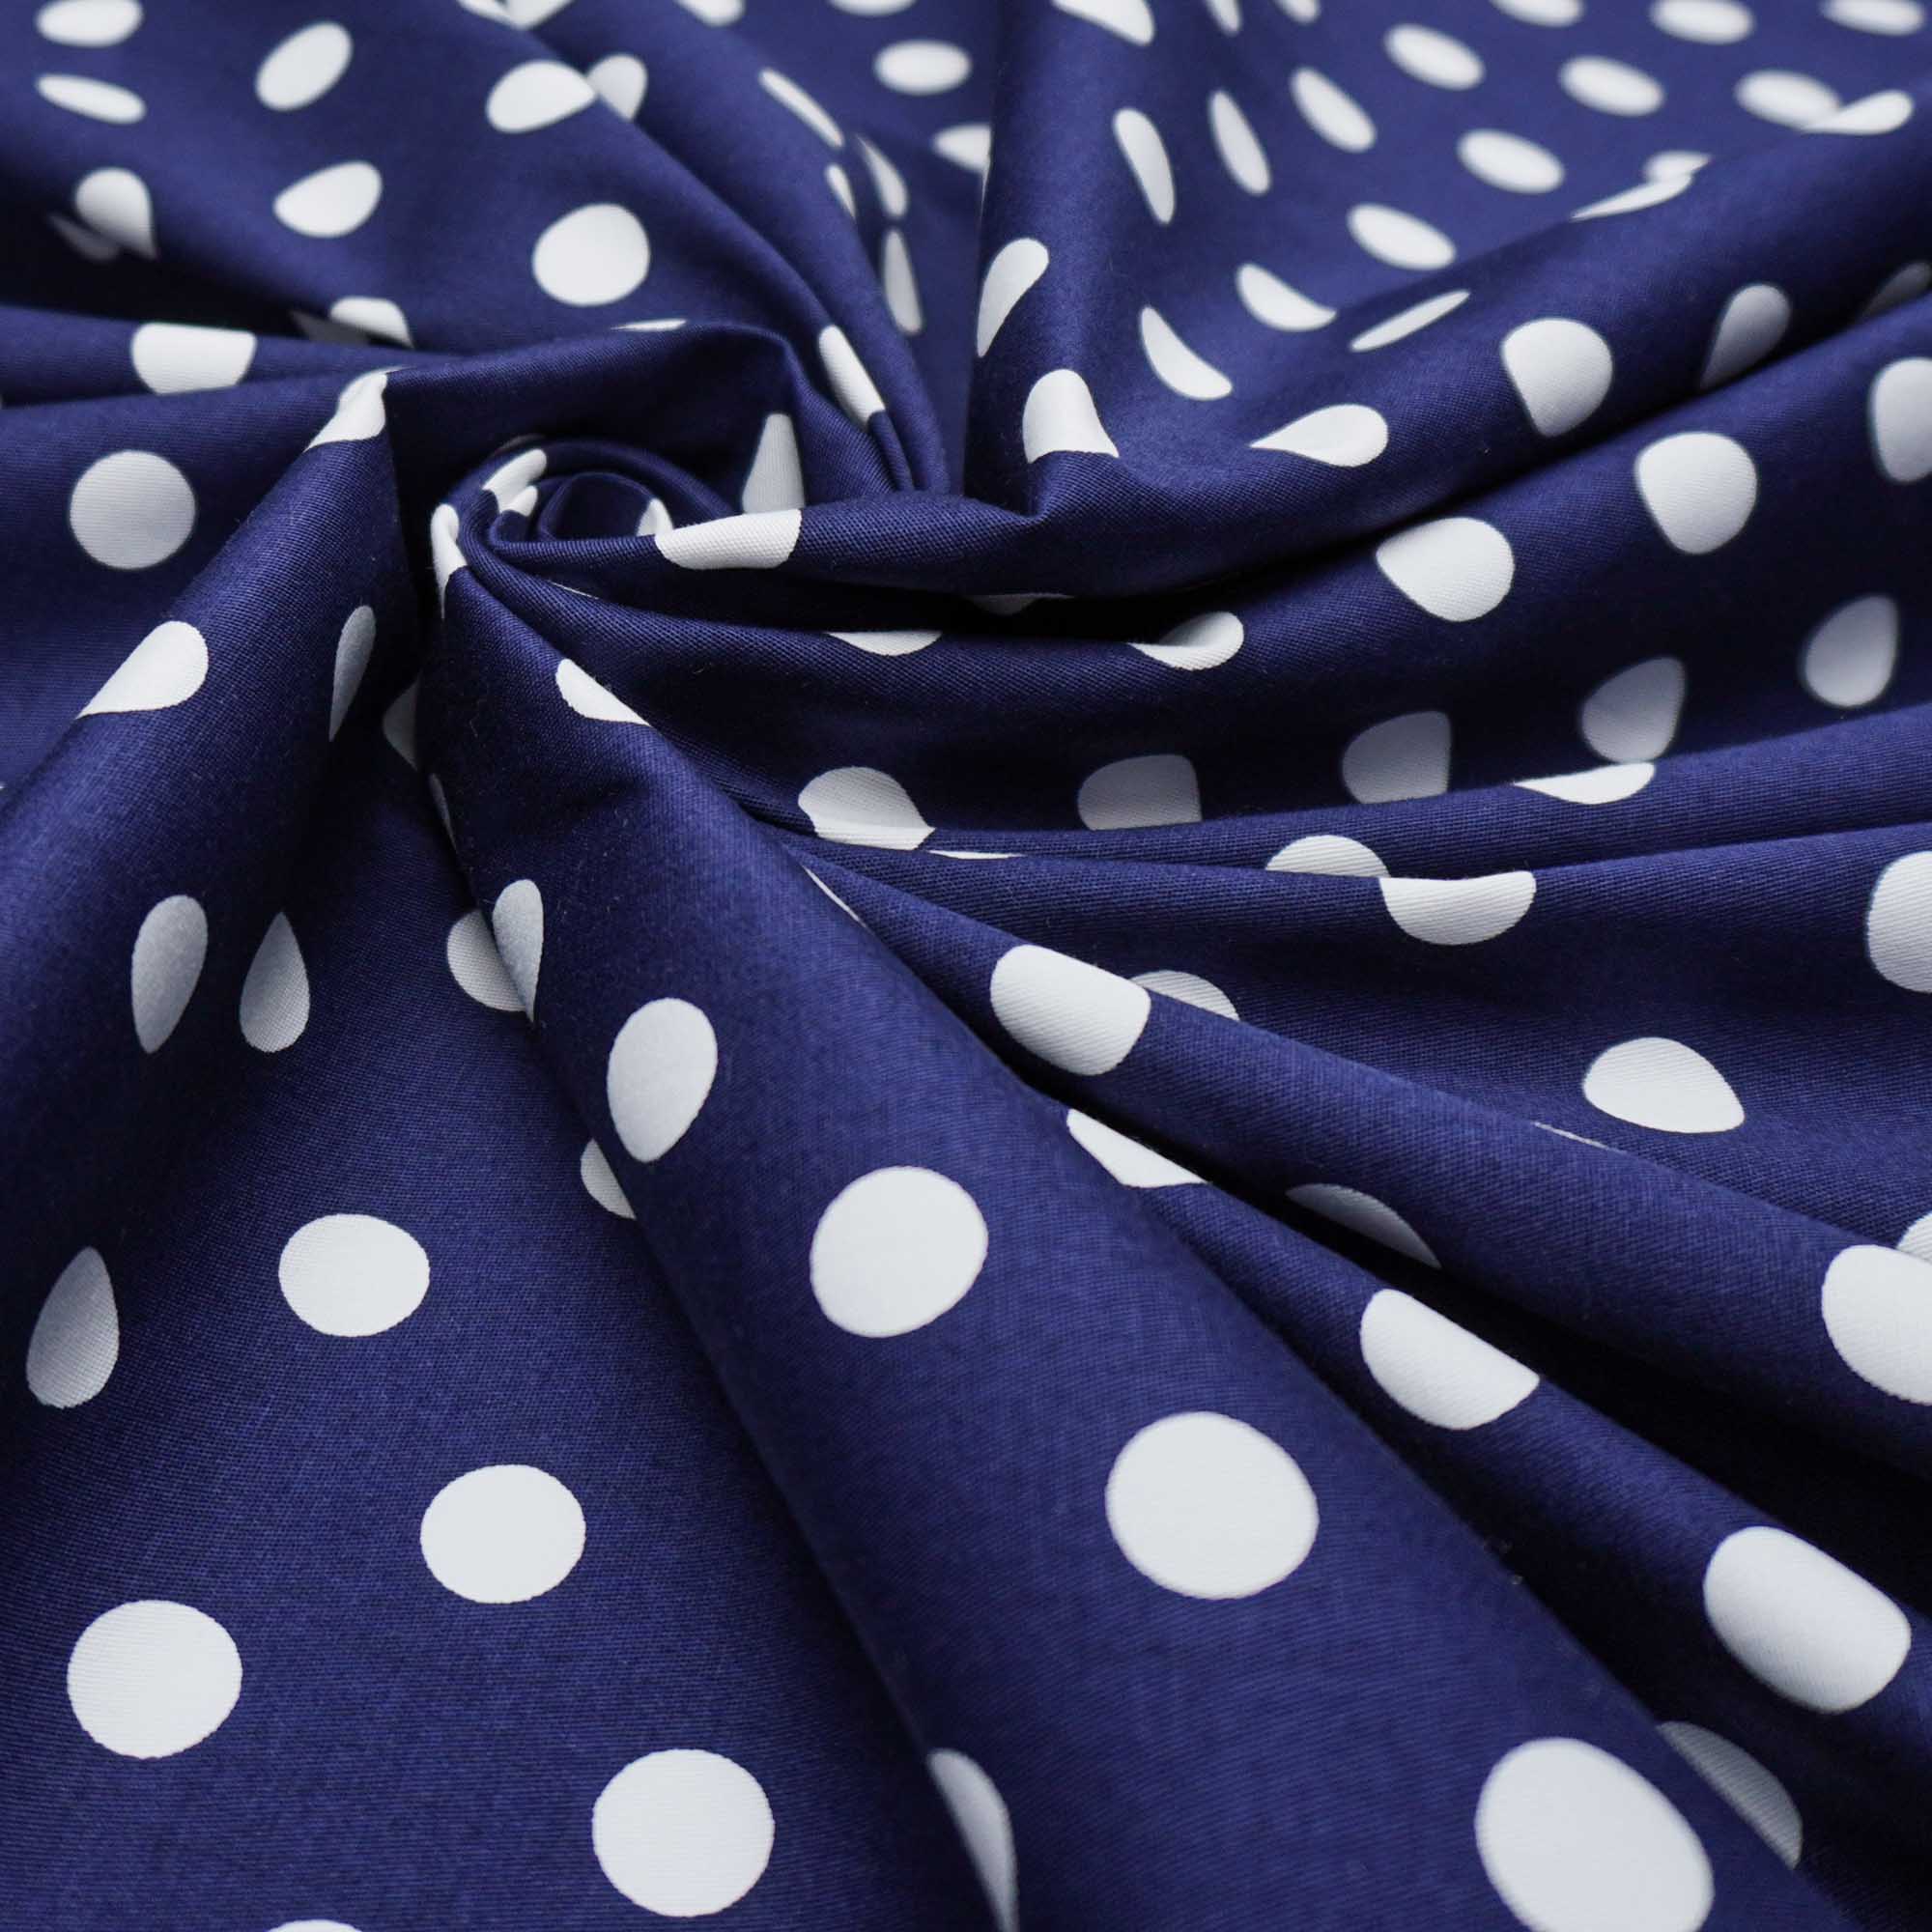 Tecido tricoline com elastano azul marinho/ poa branco (tecido italiano legítimo)